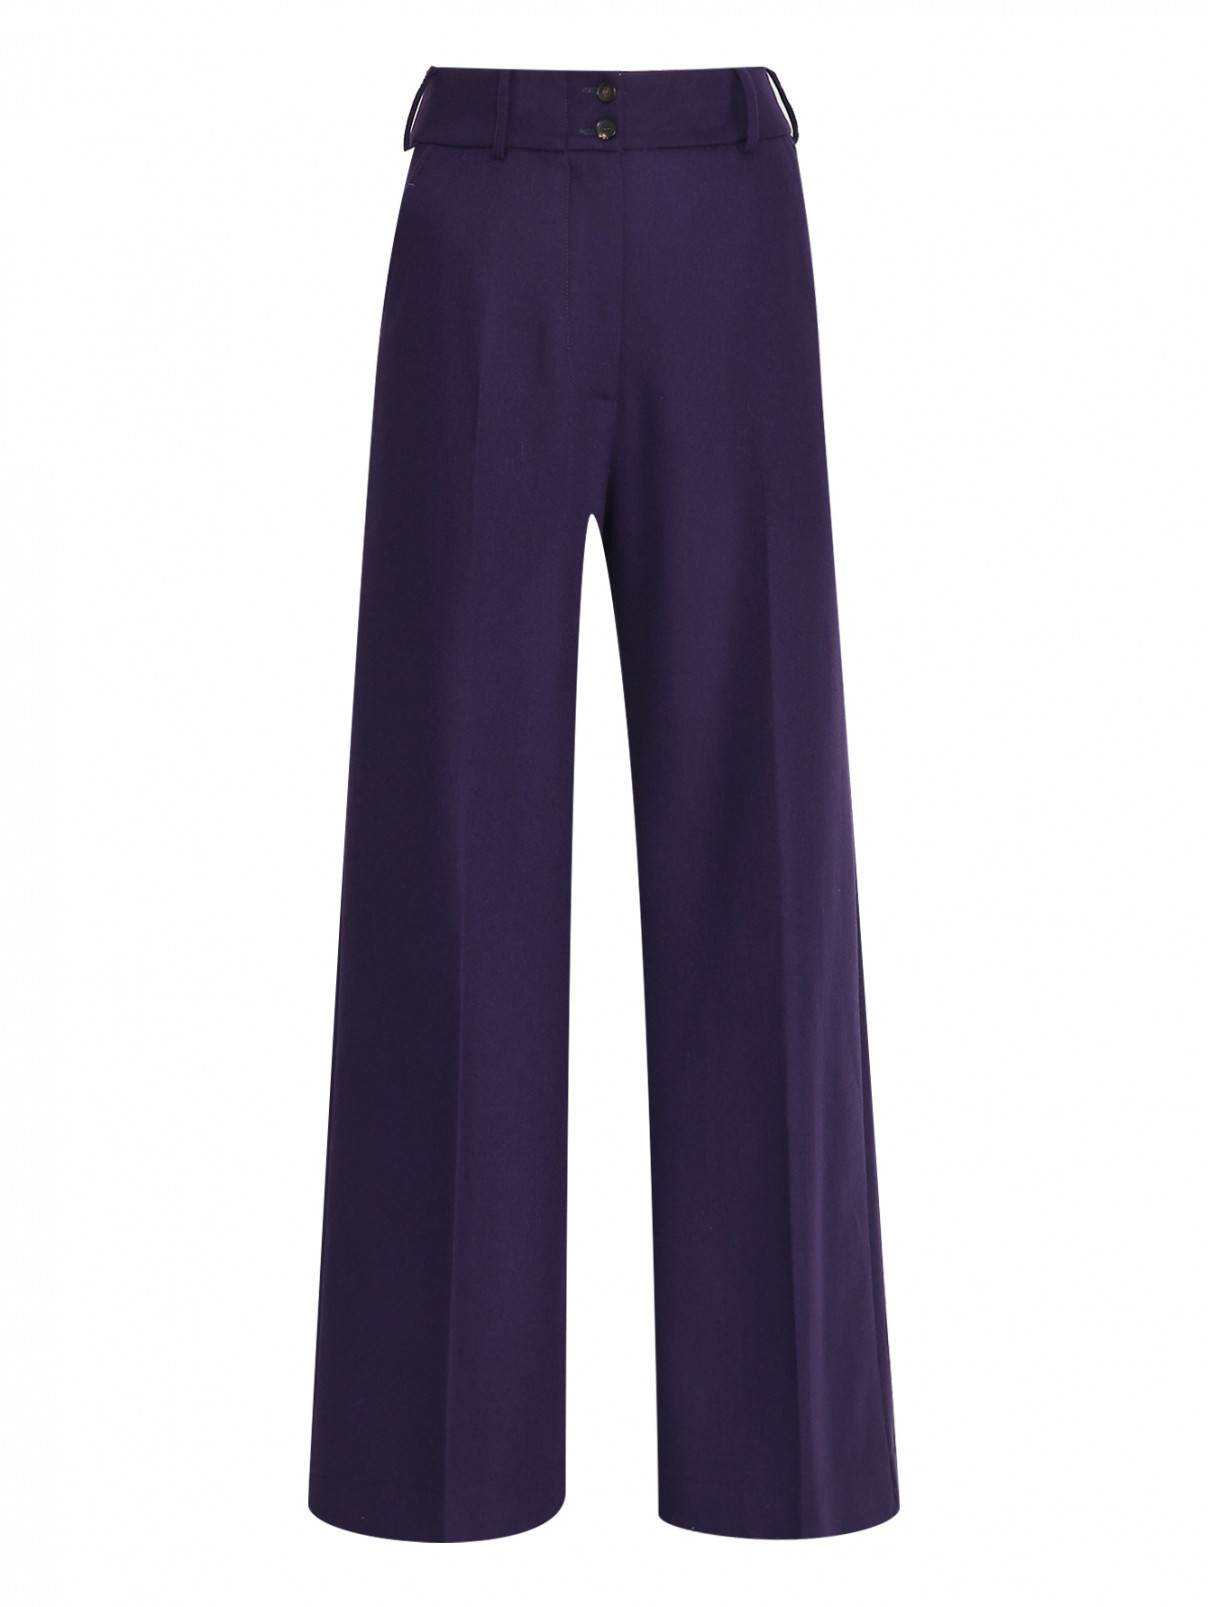 Широкие брюки из шерсти Etro  –  Общий вид  – Цвет:  Фиолетовый